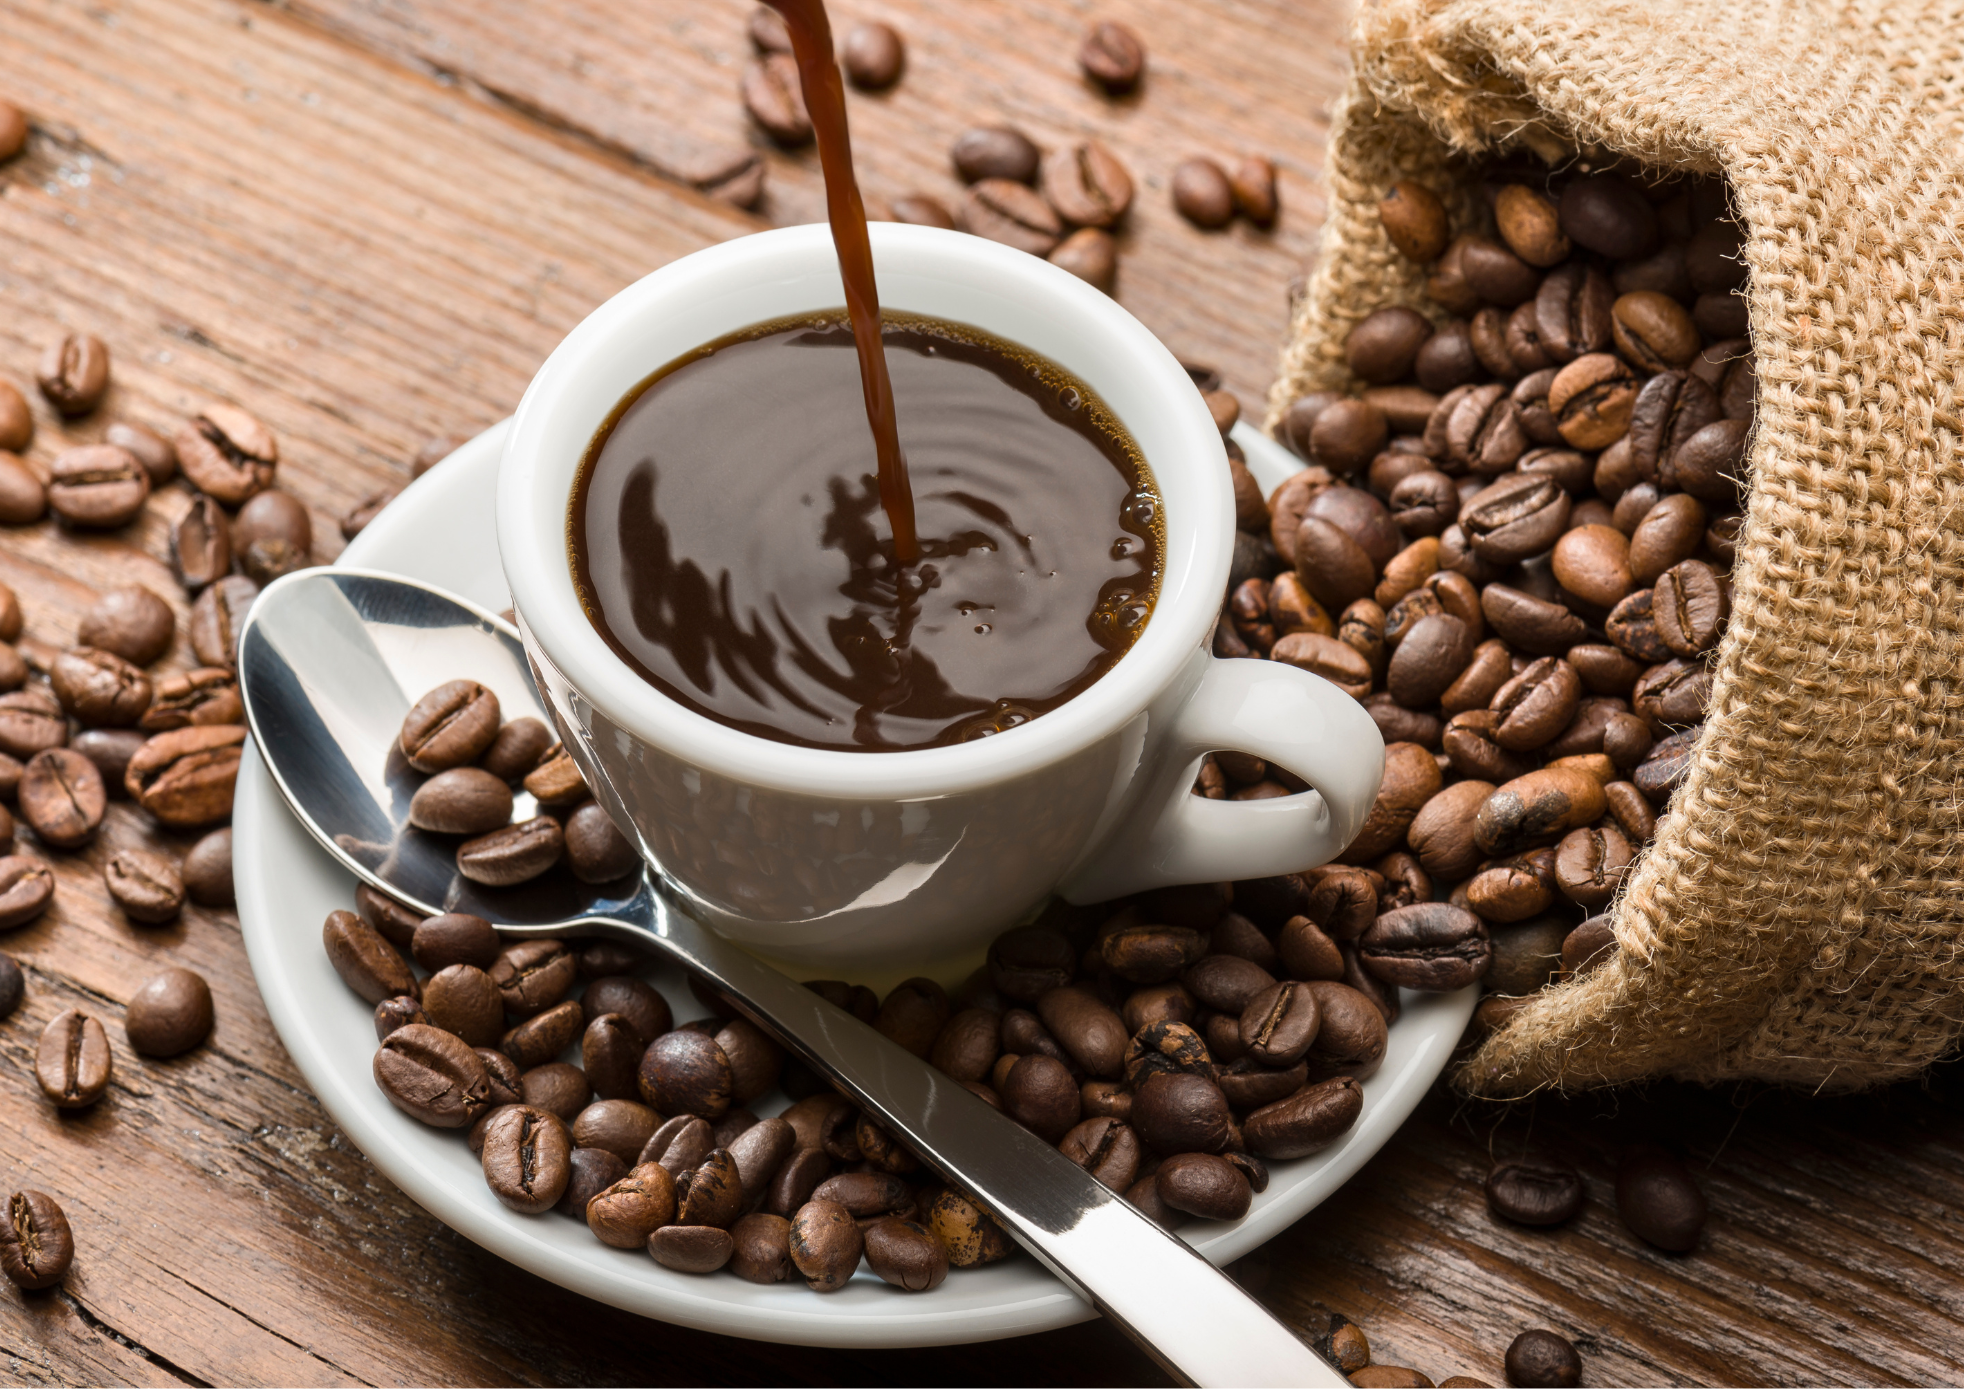 Nemt at bruge, giver en strk vaniljesmag, kan blandes i kaffen inden brygning eller drysses p toppen.